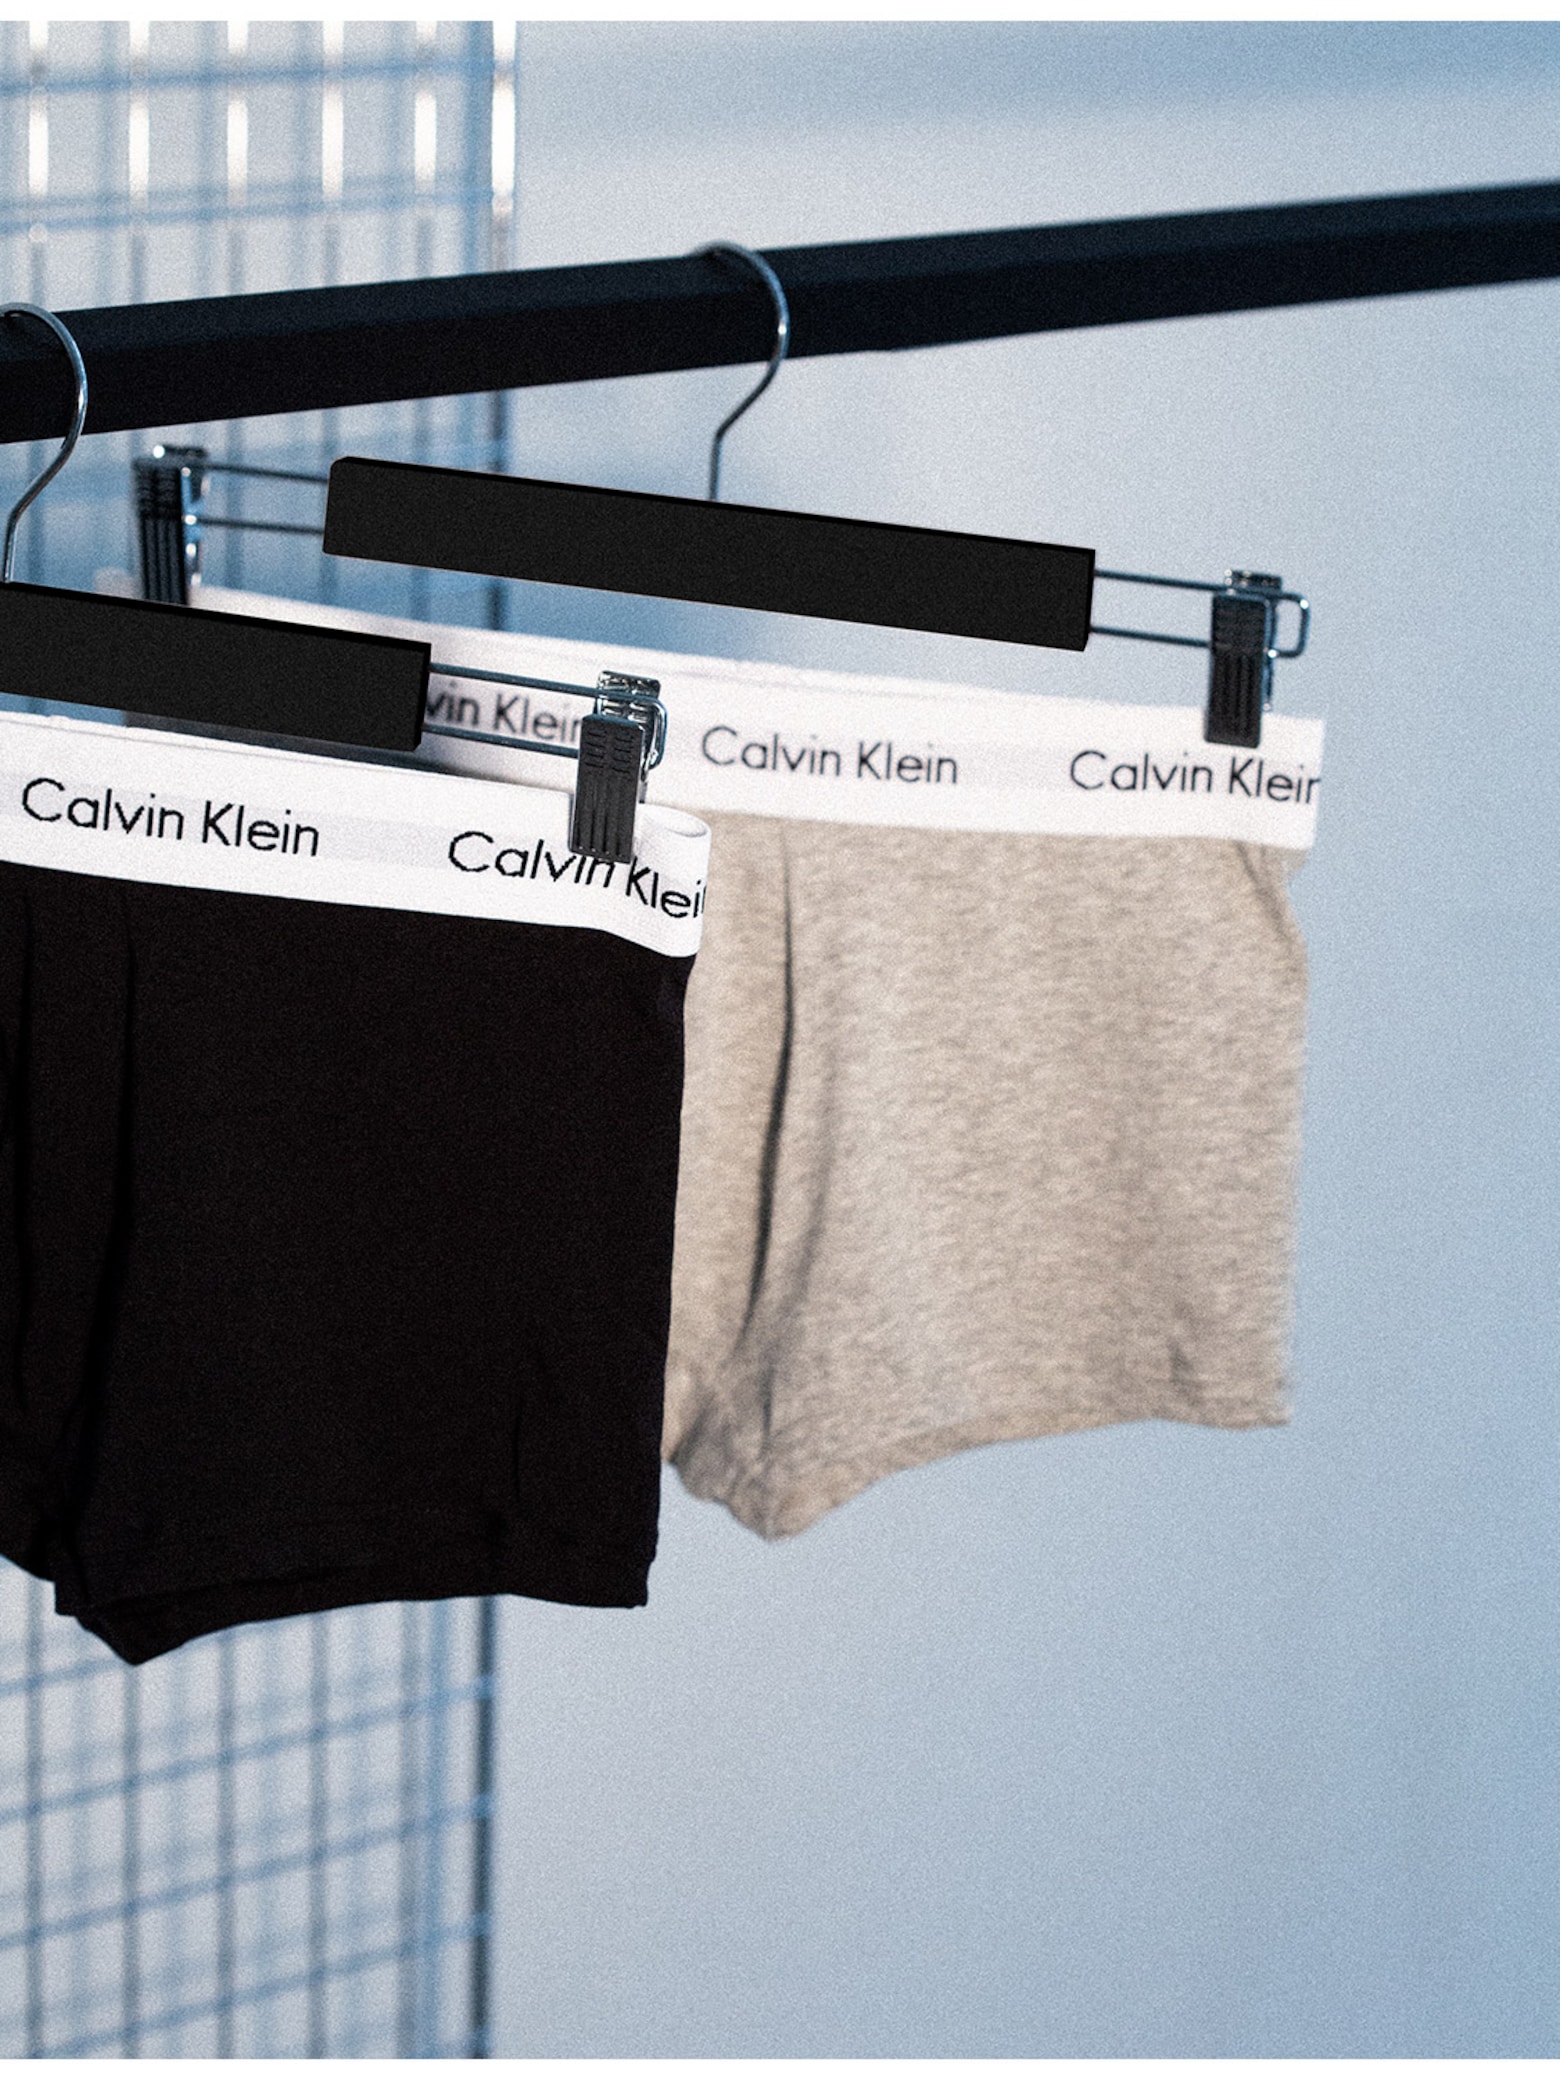 Calvin Klein Underwear null in